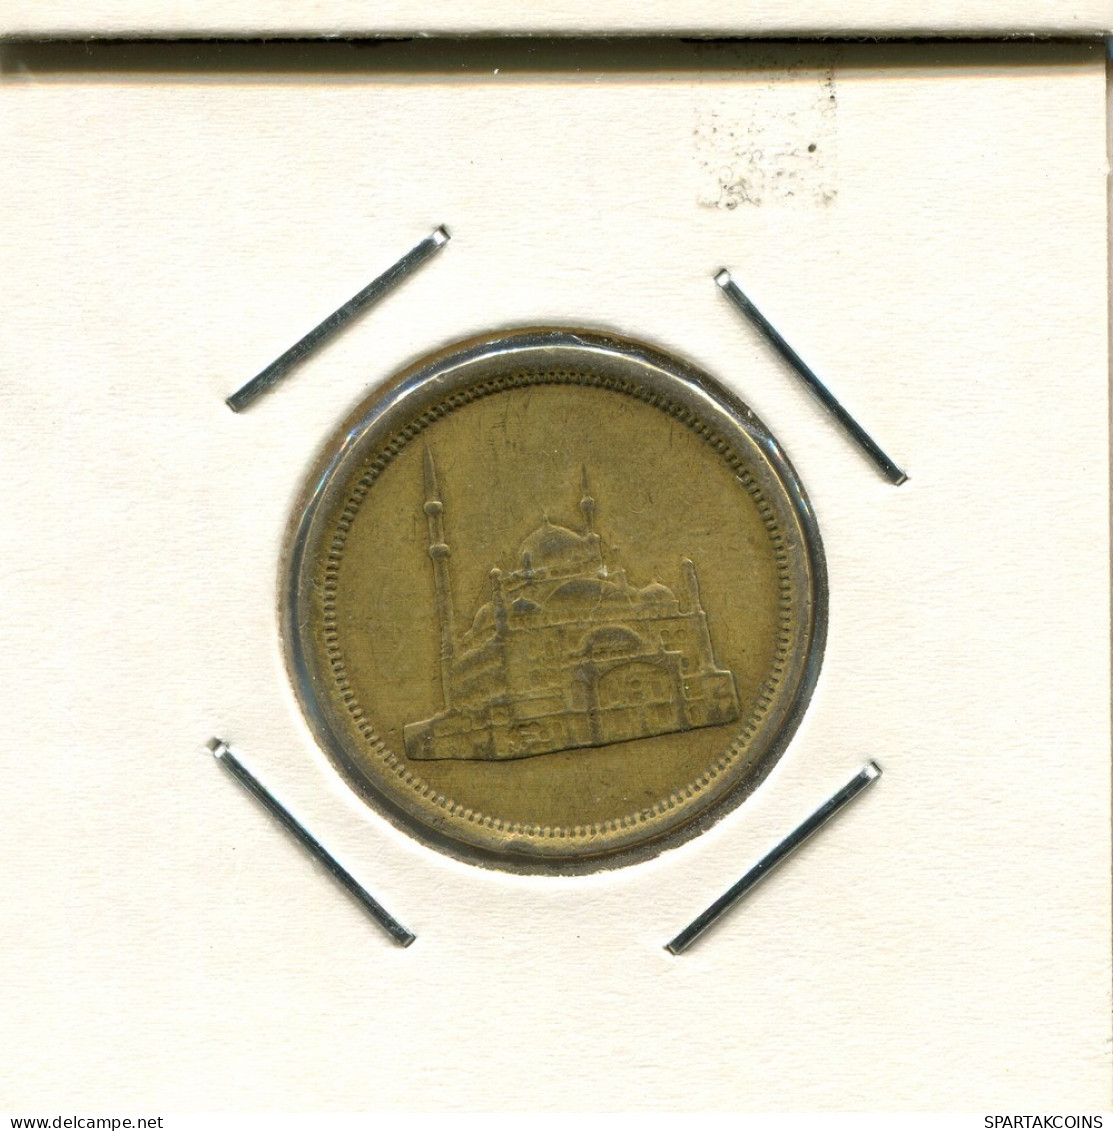 10 QIRSH 1992 ÄGYPTEN EGYPT Islamisch Münze #AS161.D.A - Aegypten